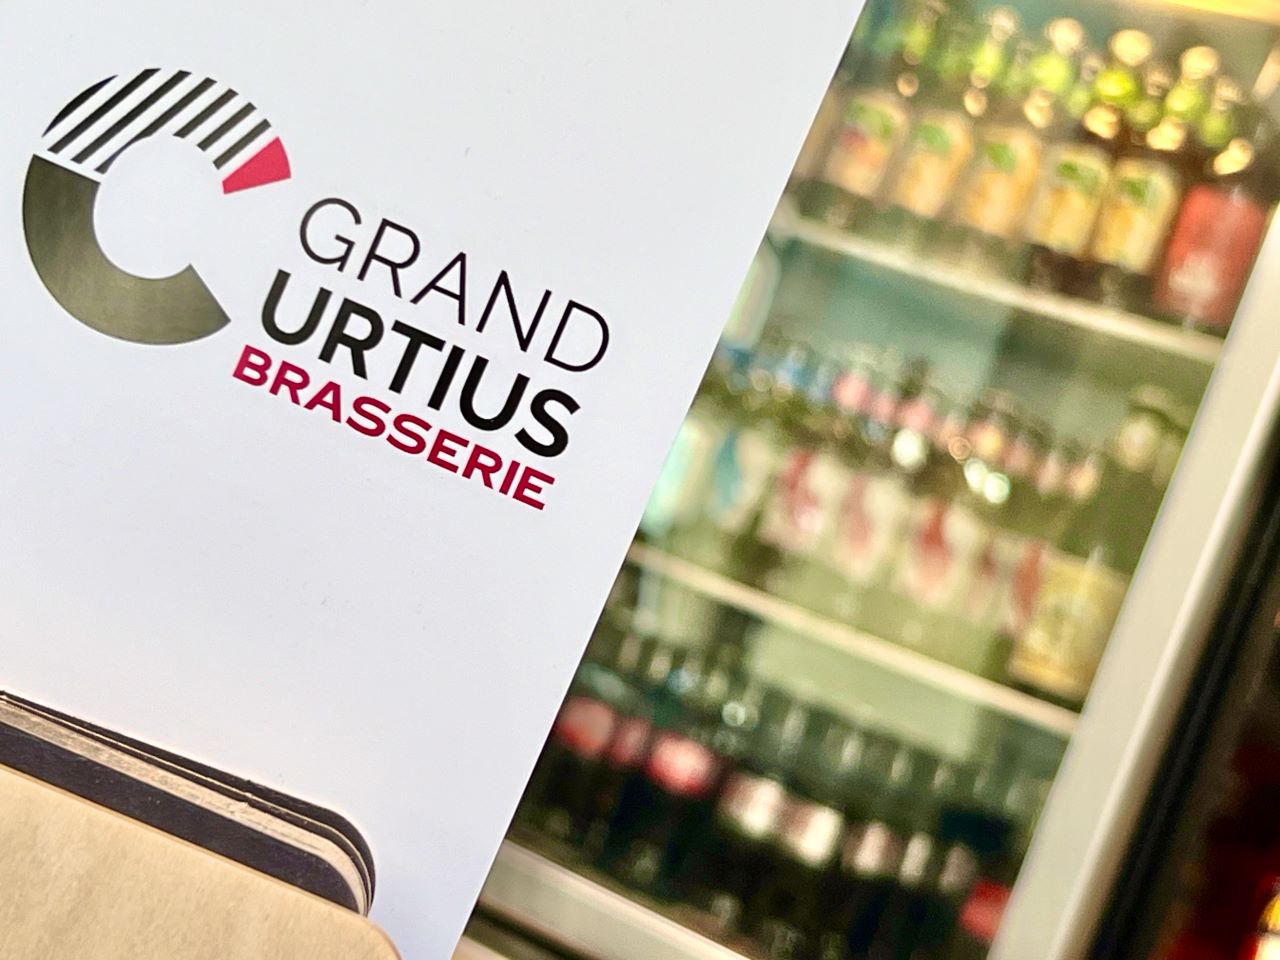 Grand Curtius Brasserie